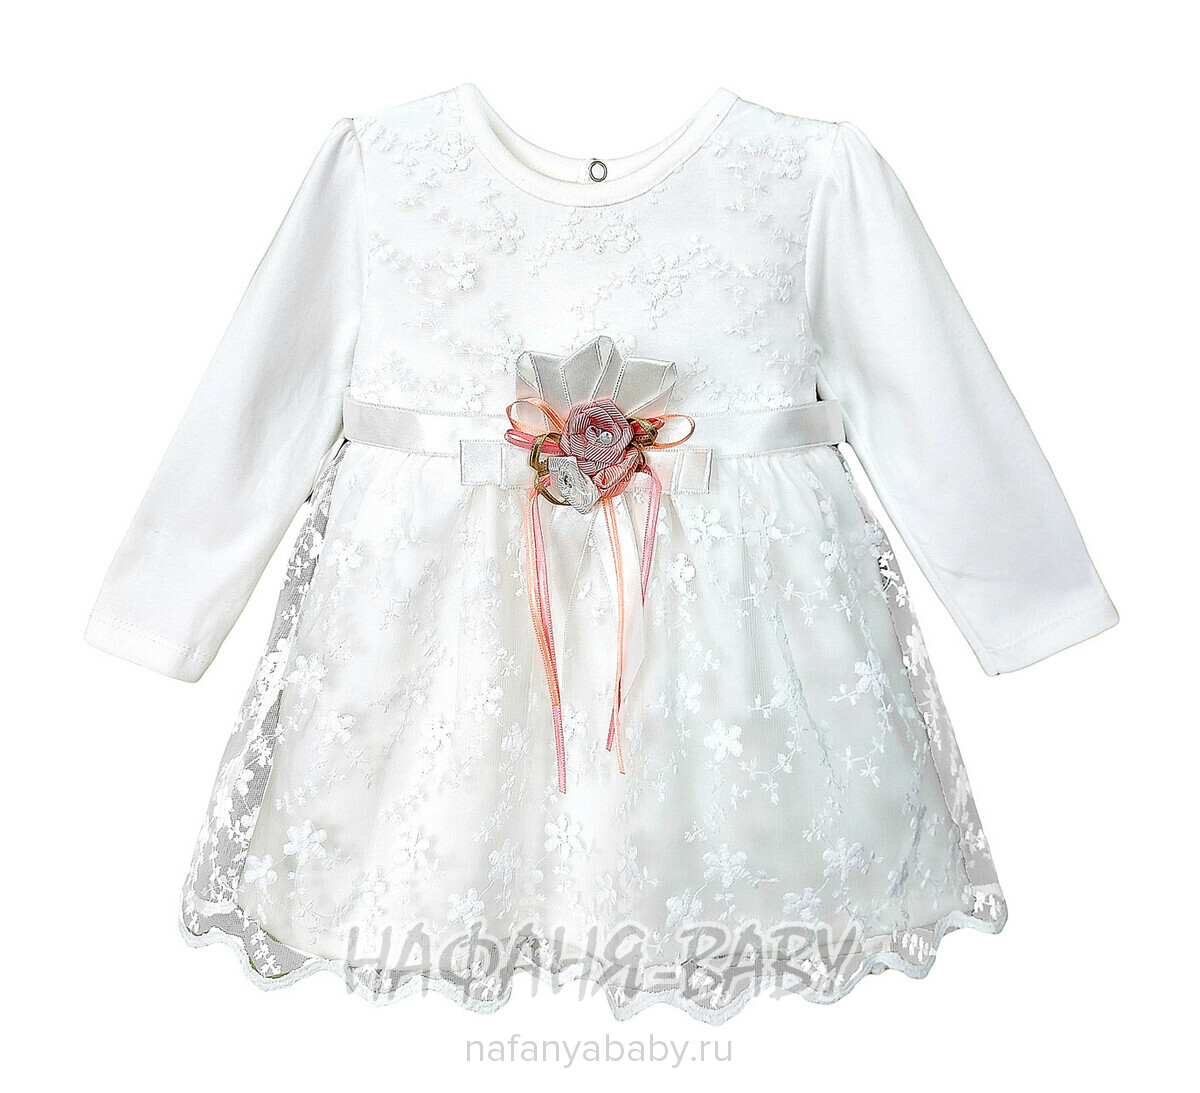 Детское нарядное платье BULSEN арт. 312, 2-4 года, цвет молочный, оптом Турция